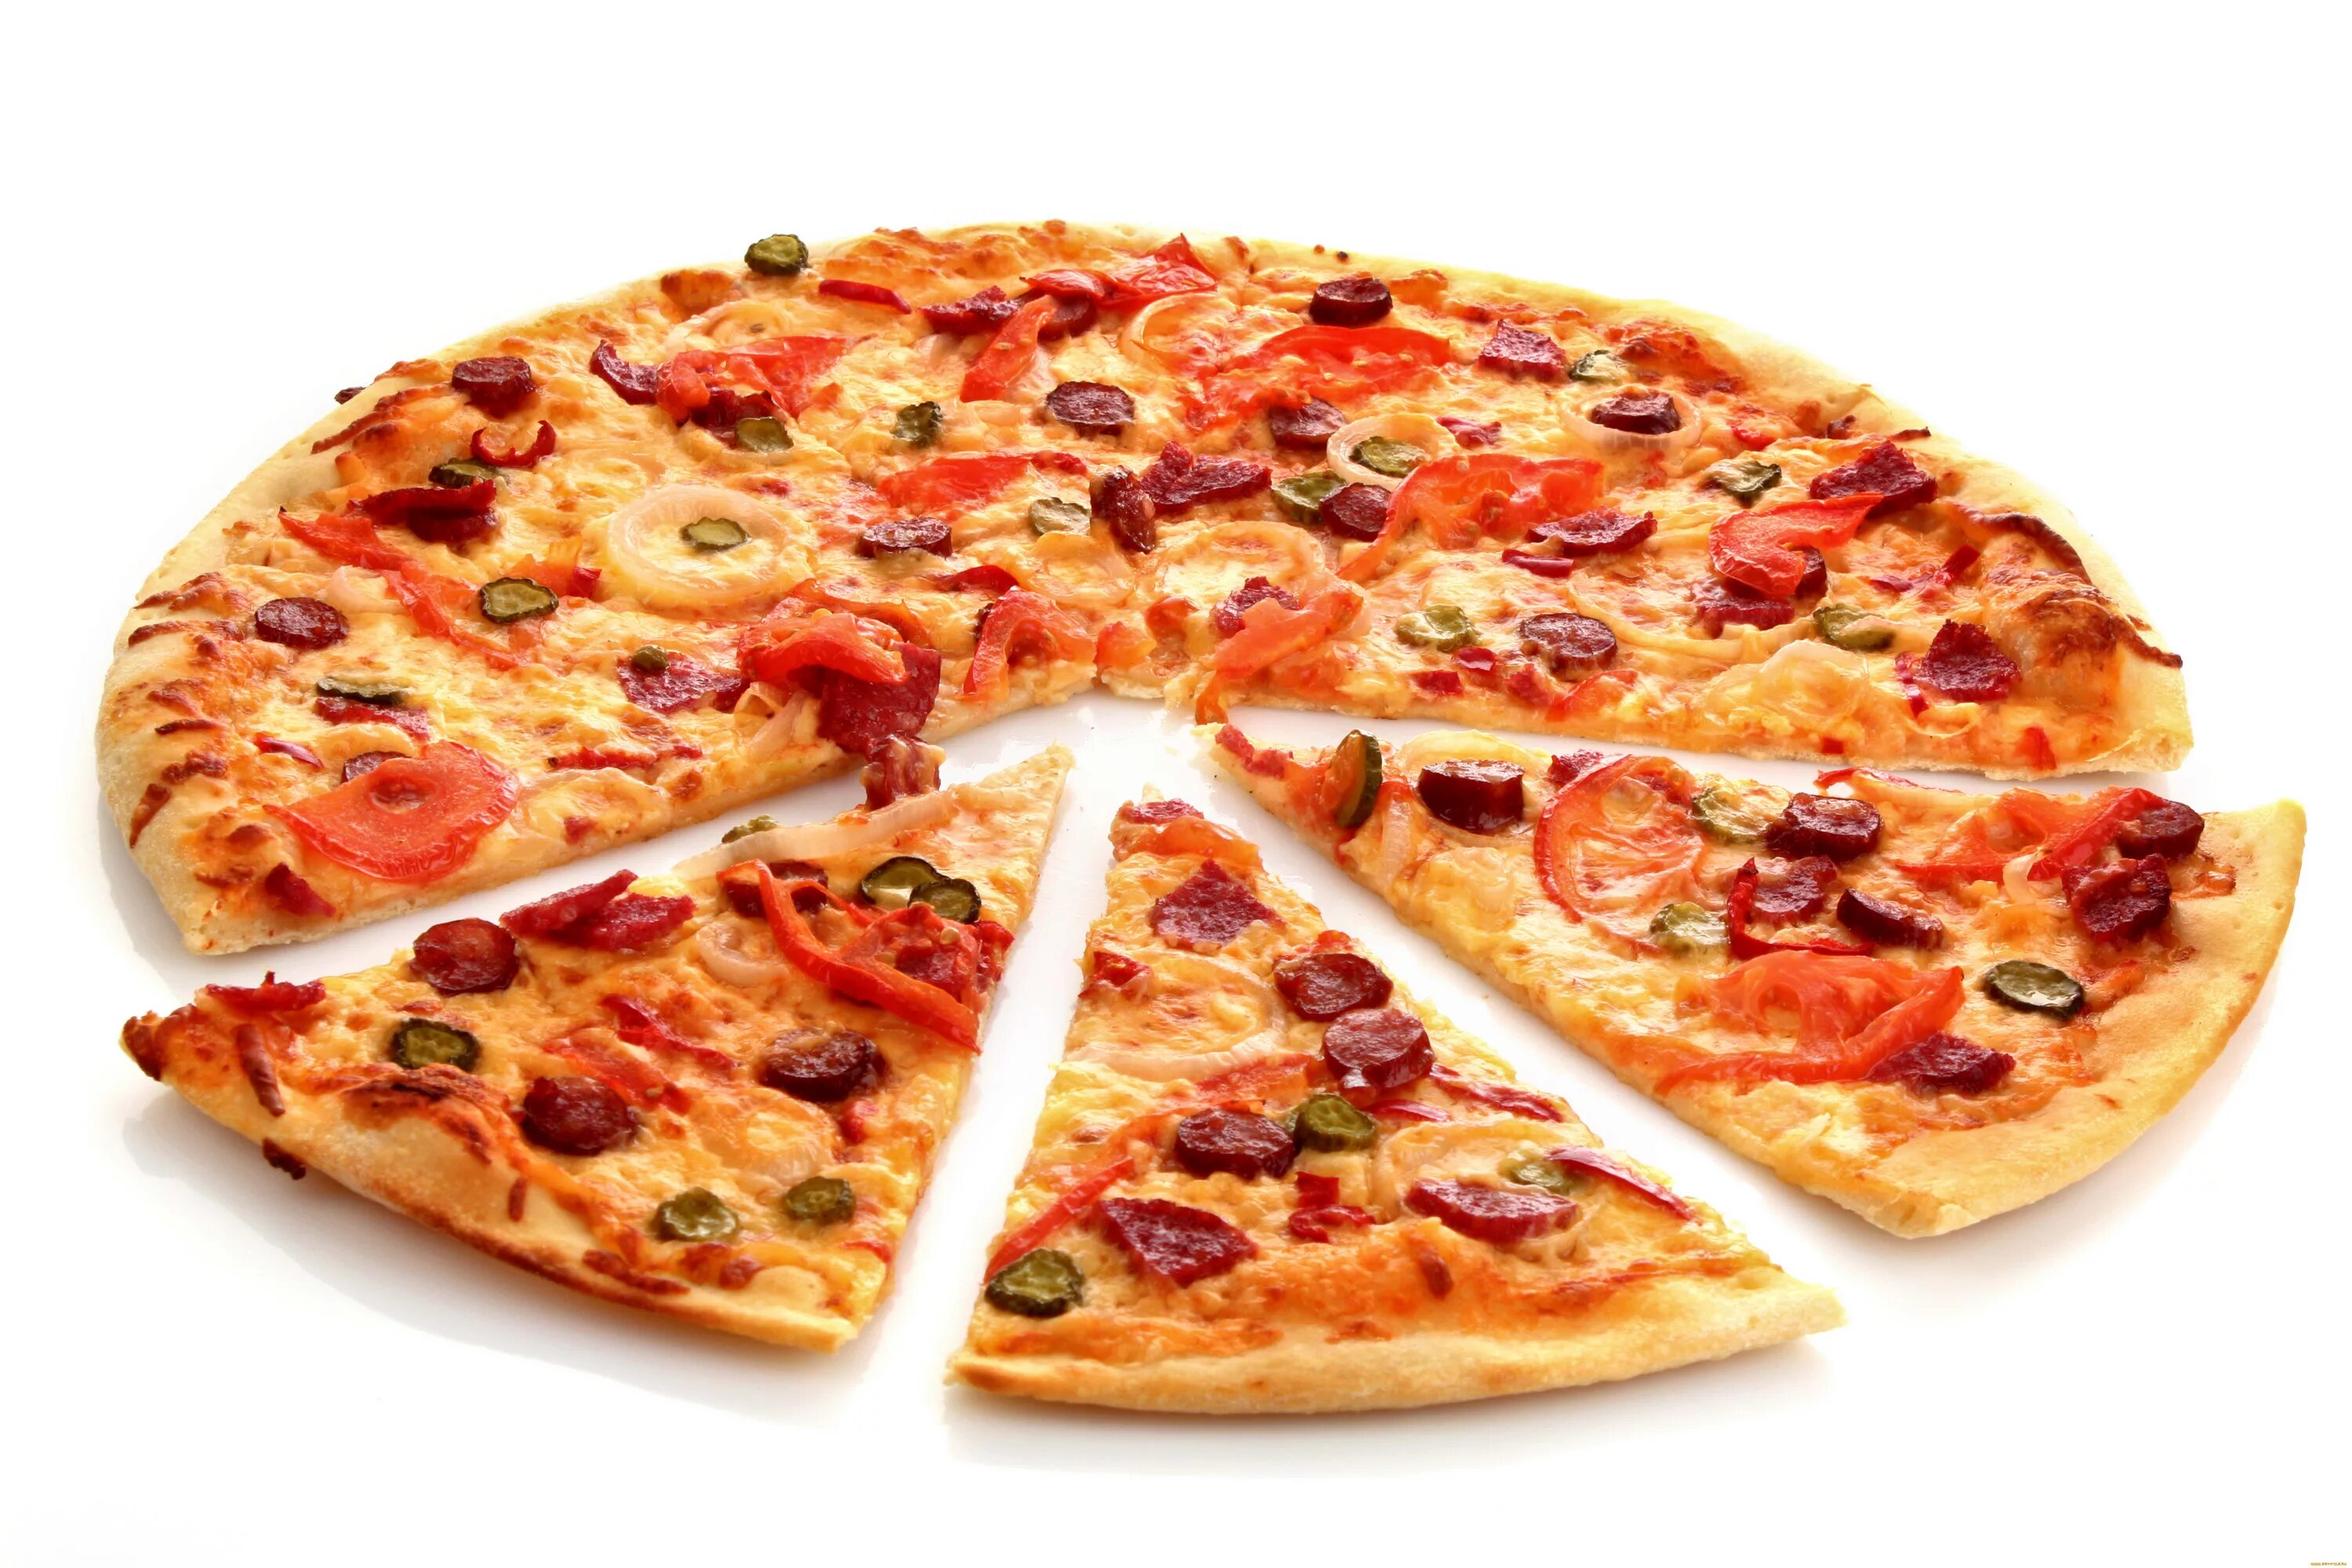 "Пицца". Еда пицца. Кусок пиццы. Пицца на прозрачном фоне. 3 кусочка пиццы